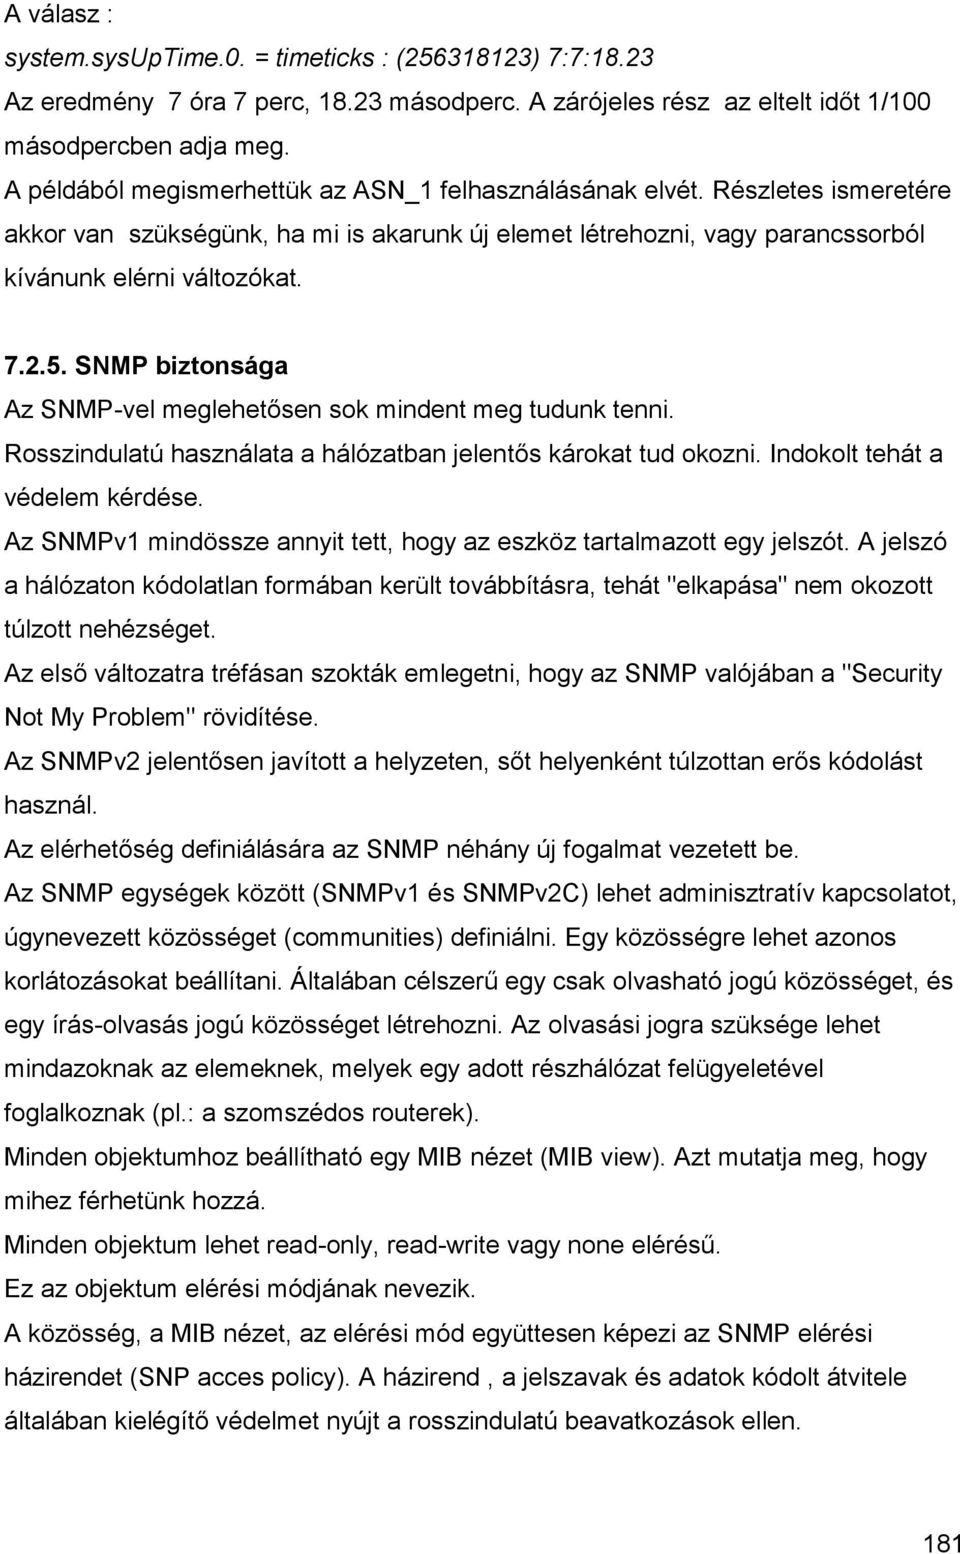 SNMP biztonsága Az SNMP-vel meglehetősen sok mindent meg tudunk tenni. Rosszindulatú használata a hálózatban jelentős károkat tud okozni. Indokolt tehát a védelem kérdése.